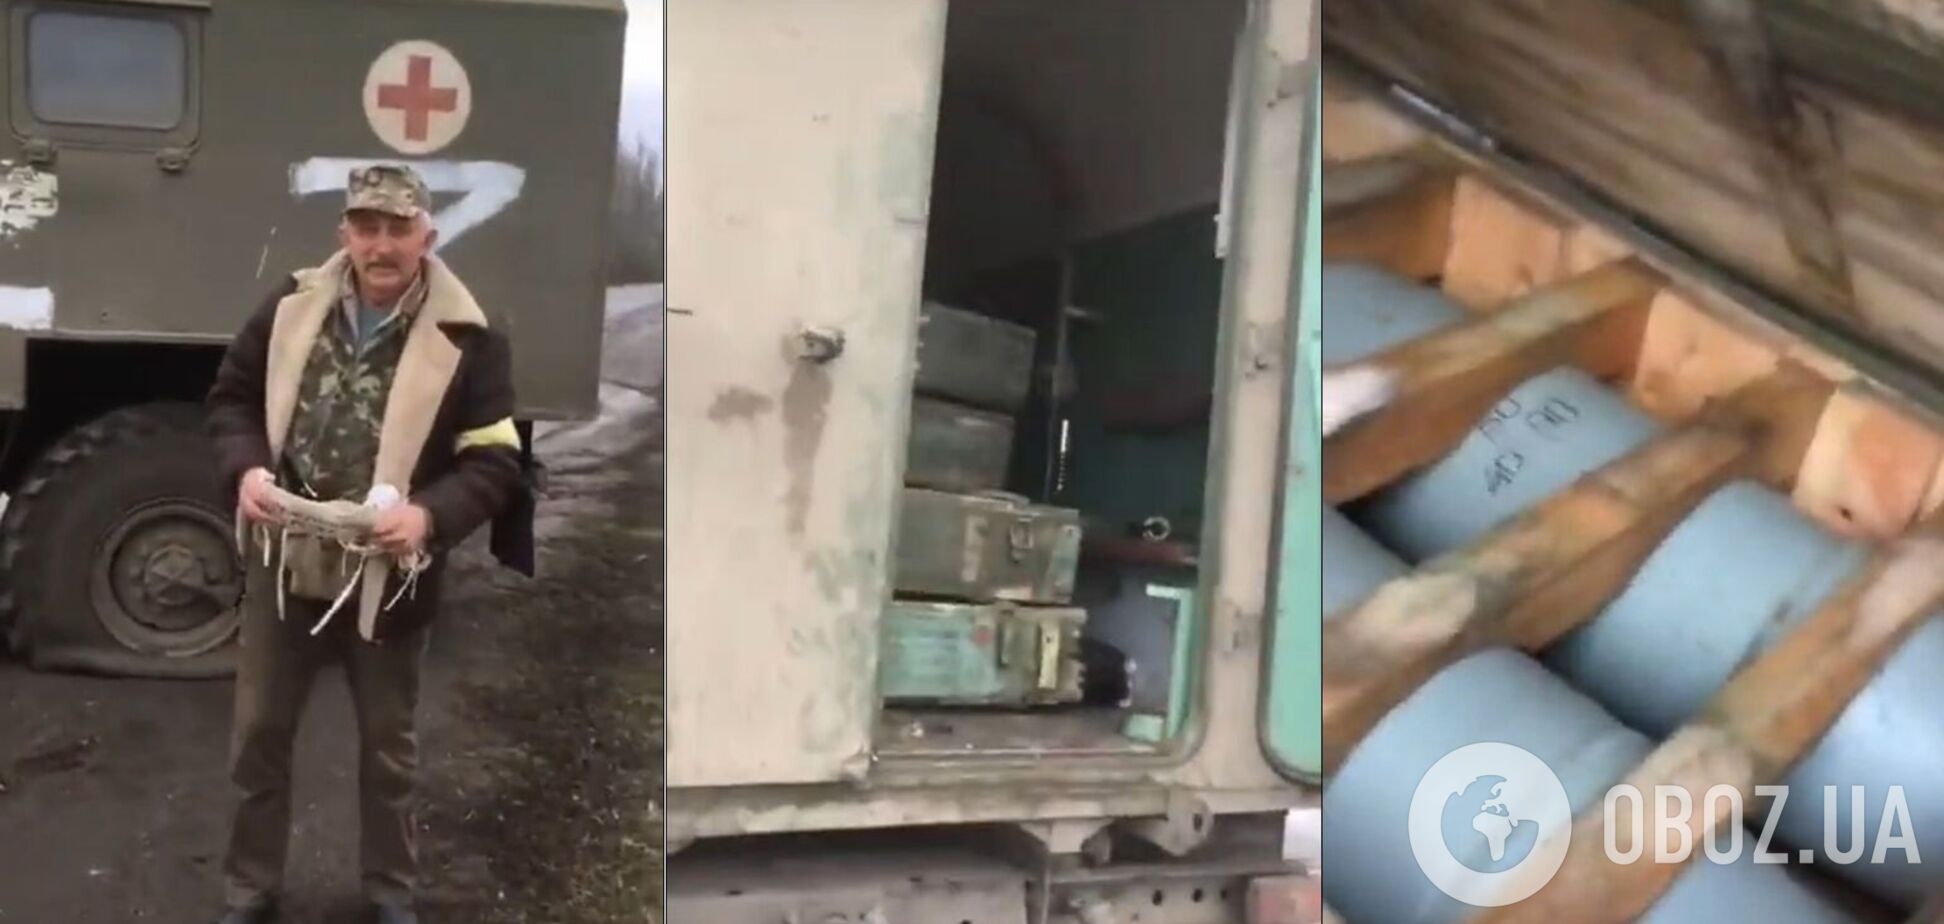 Россияне совершили еще одно военное преступление, используя санитарные машины для боеприпасов. Видео